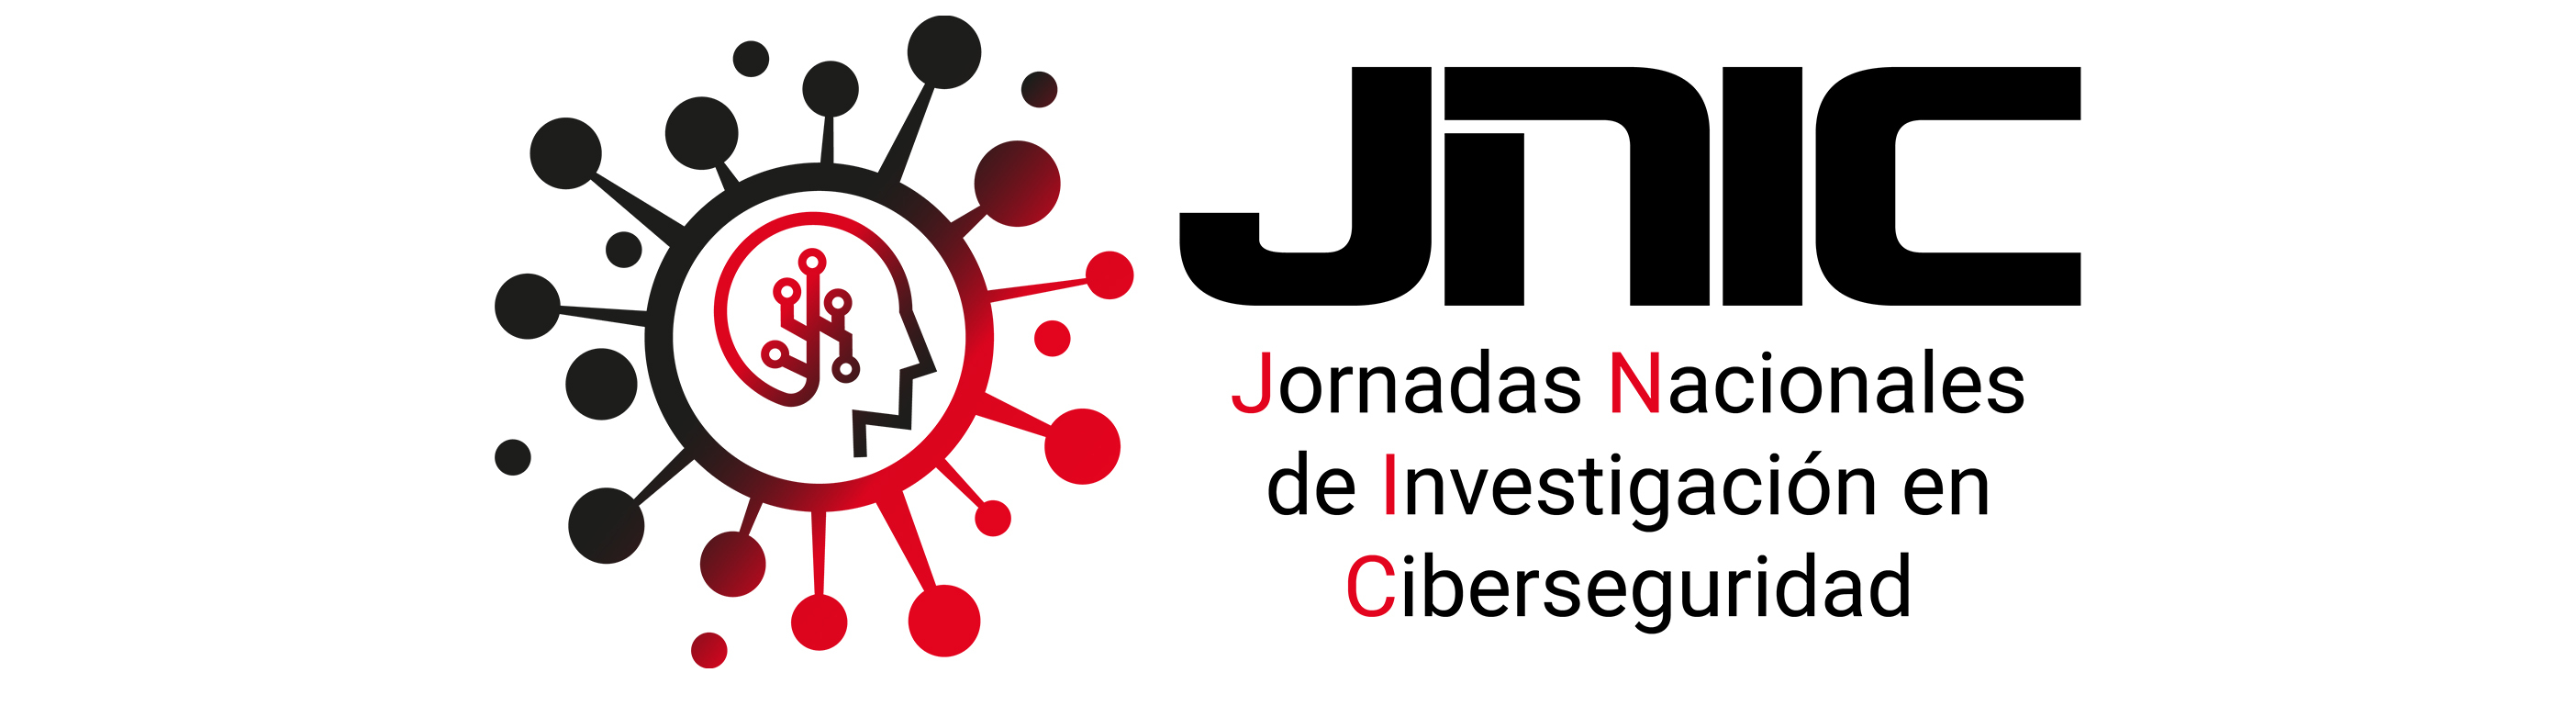 Logo de las Jornadas Nacionales de Investigación en Ciberseguridad (JNIC)